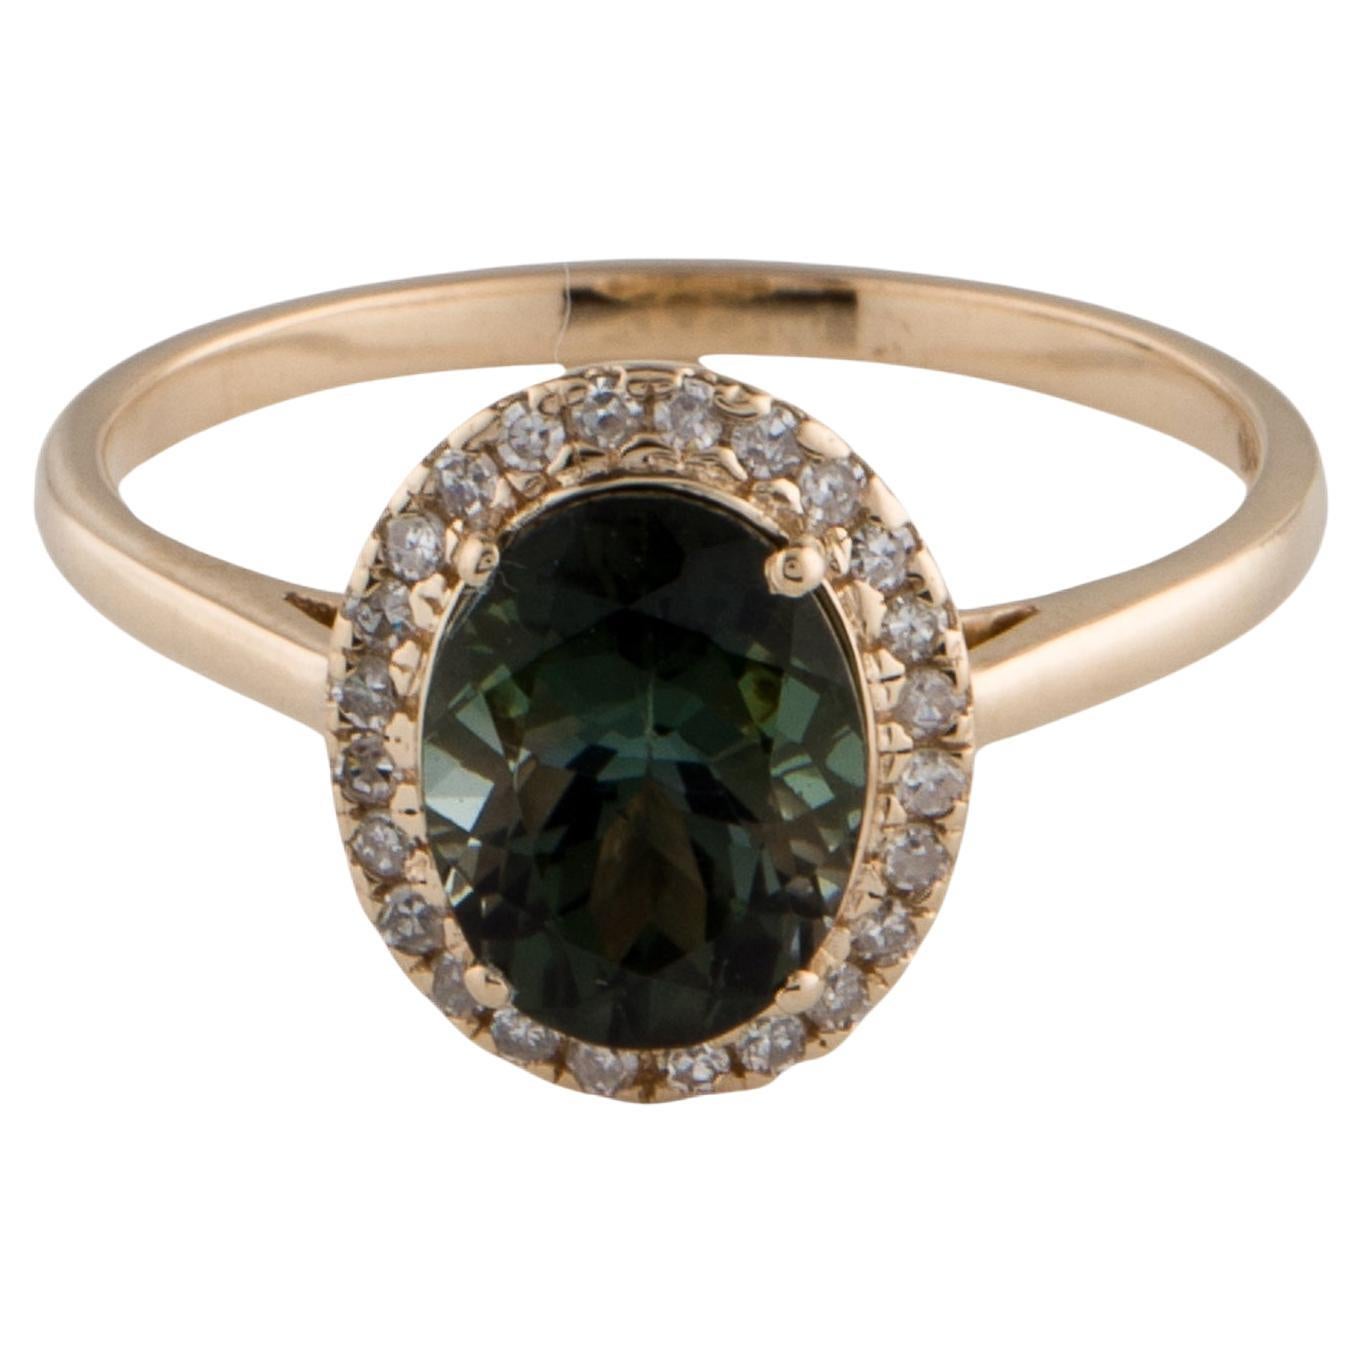 Radiant 14K Tourmaline & Diamond Cocktail Ring - Size 8 - Fine Gemstone Jewelry For Sale